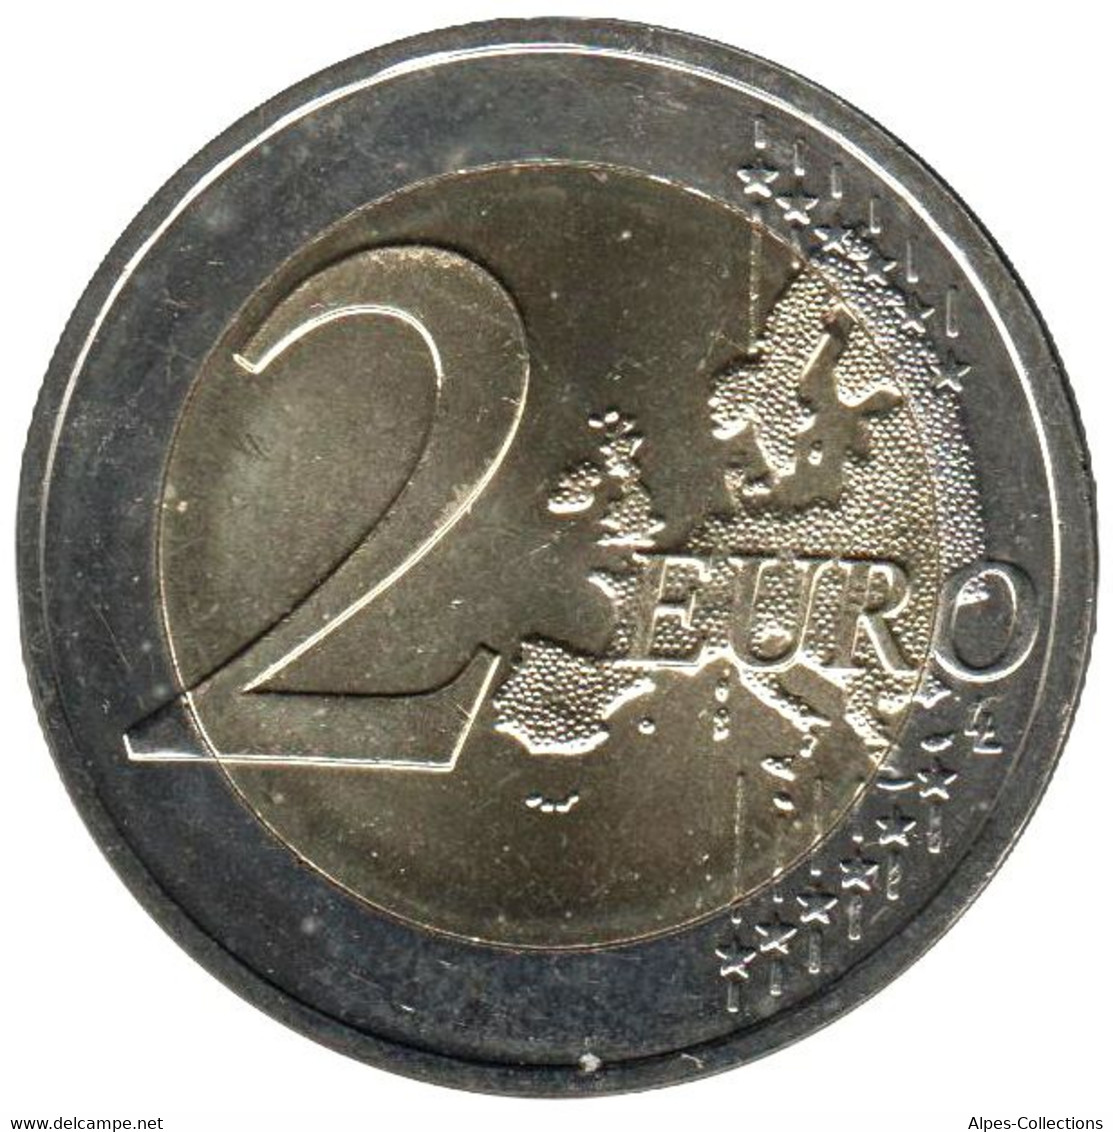 LI20019.1 - LITUANIE - 2 Euros Comm. Les Sutartines Chansons Lituaniennes - 2019 - Lituania